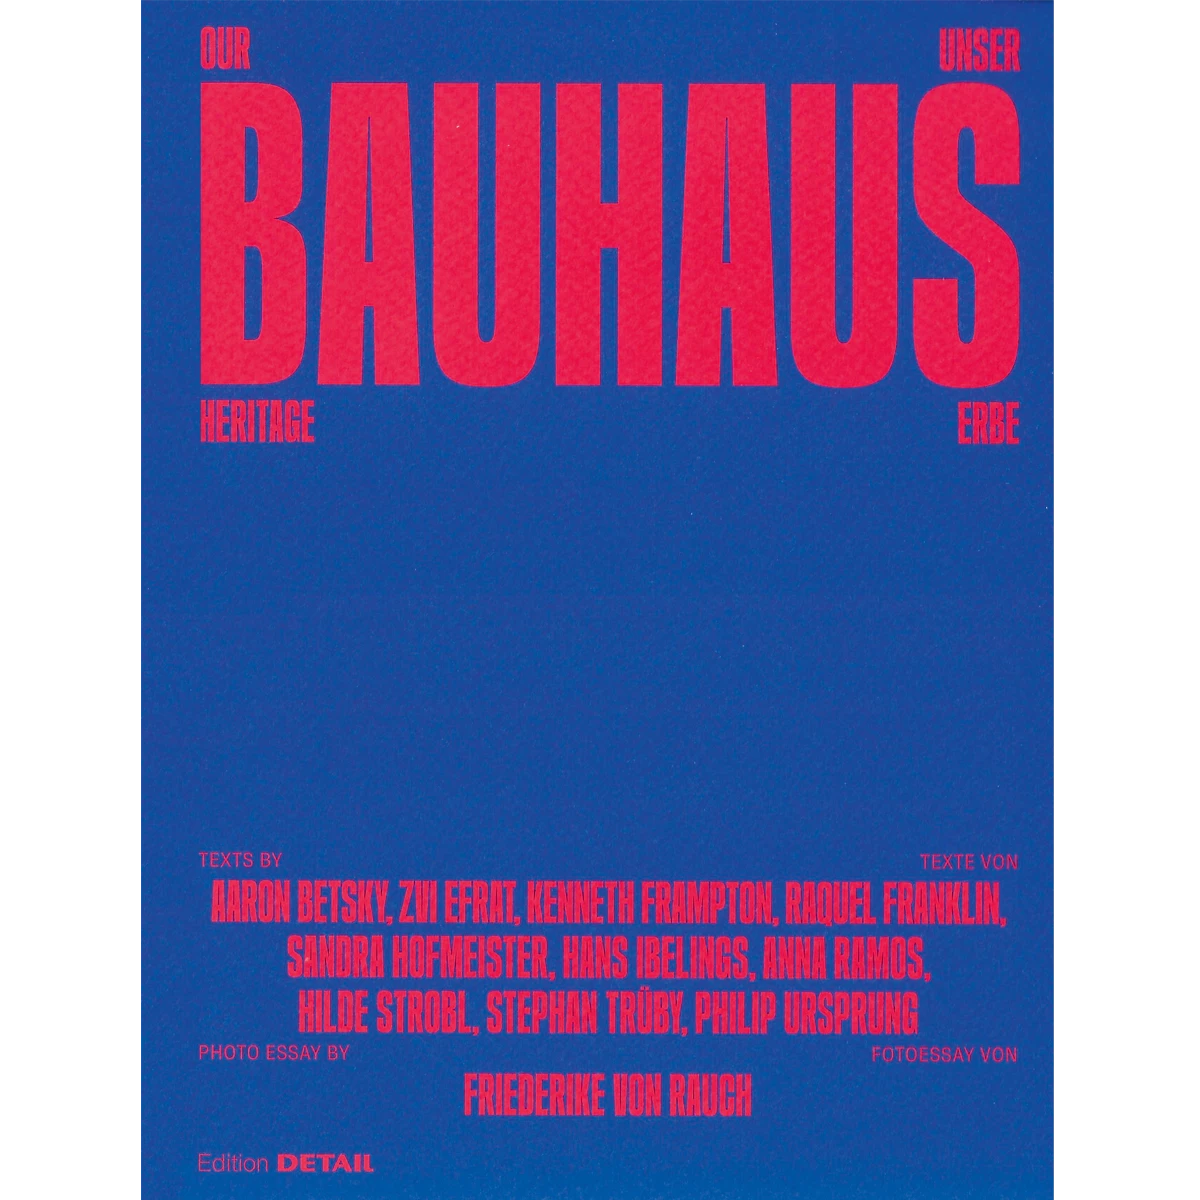 Our Bauhaus Heritage